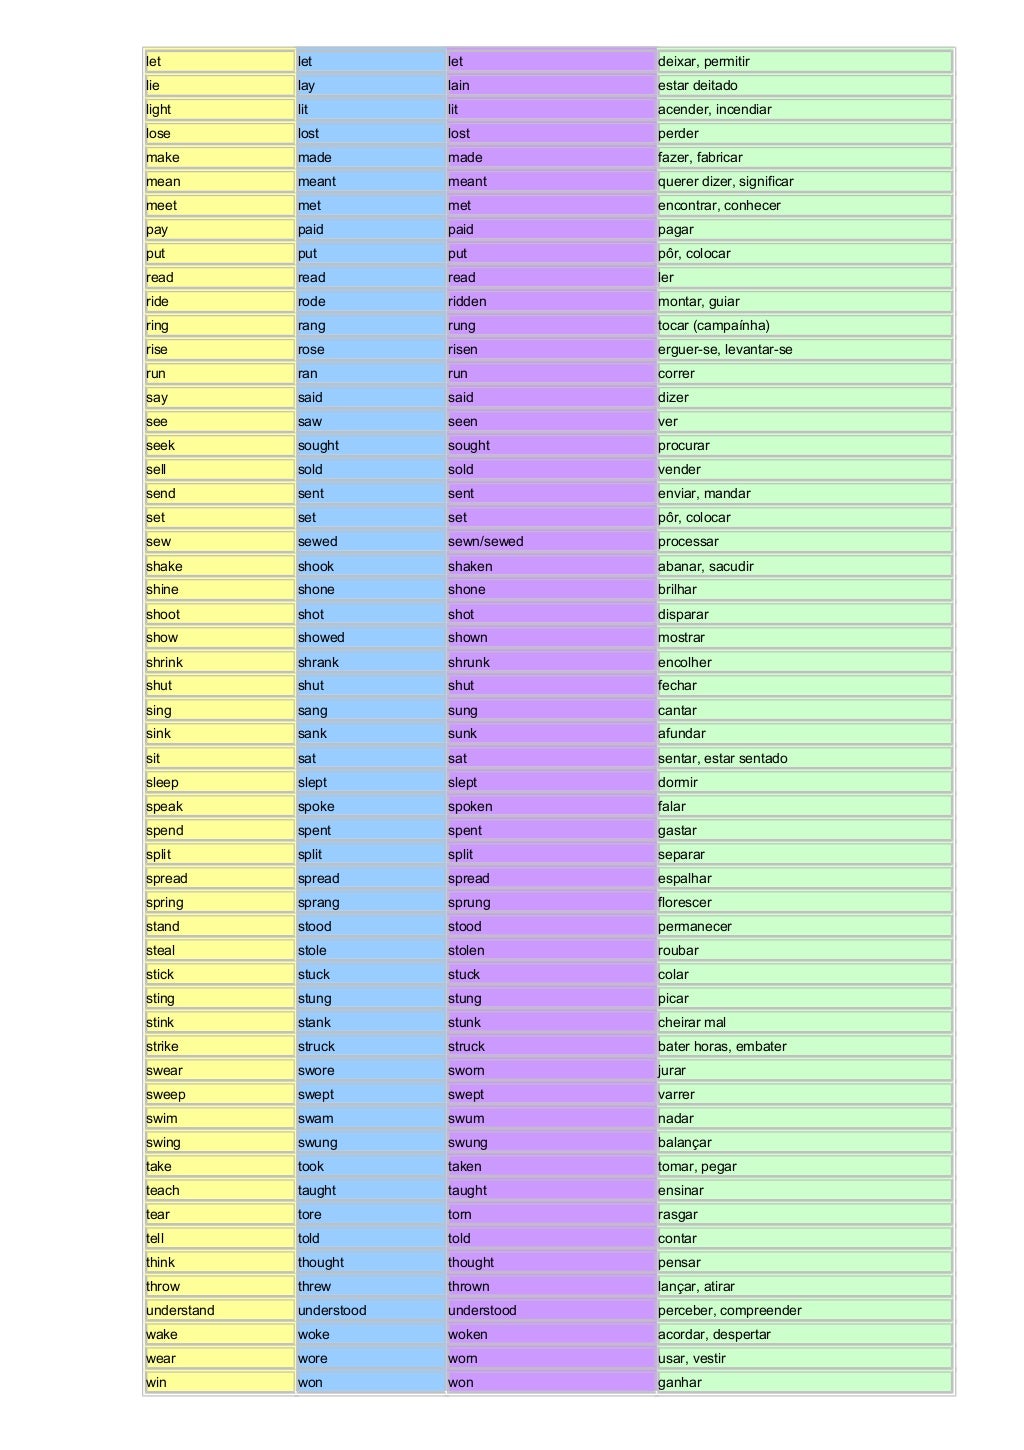 Irregular Verbs List